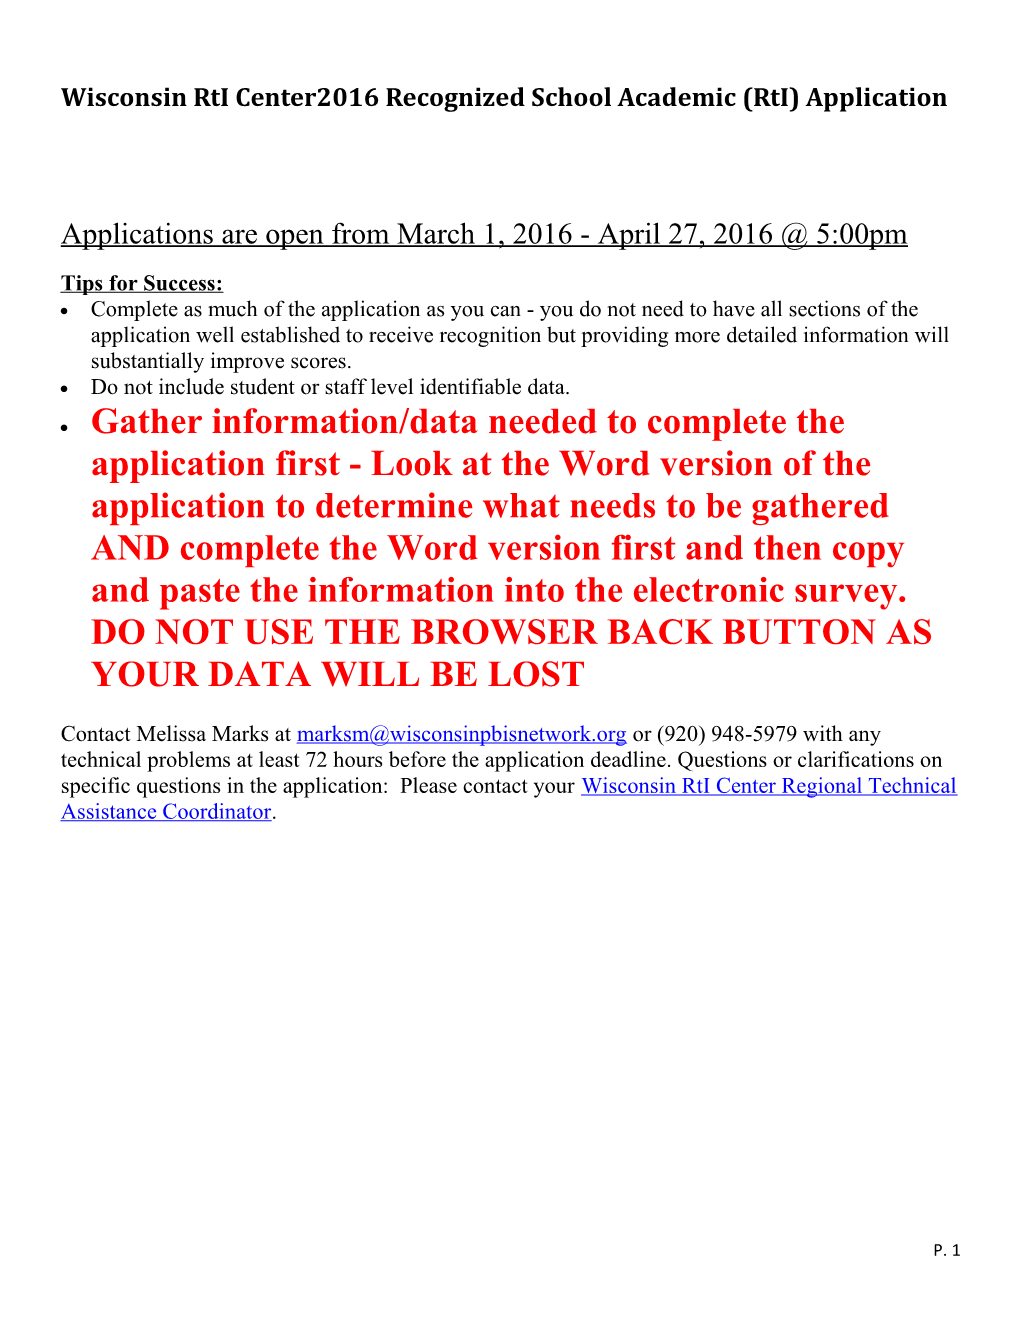 Wisconsin Rti Center2016 Recognized School Academic (Rti) Application